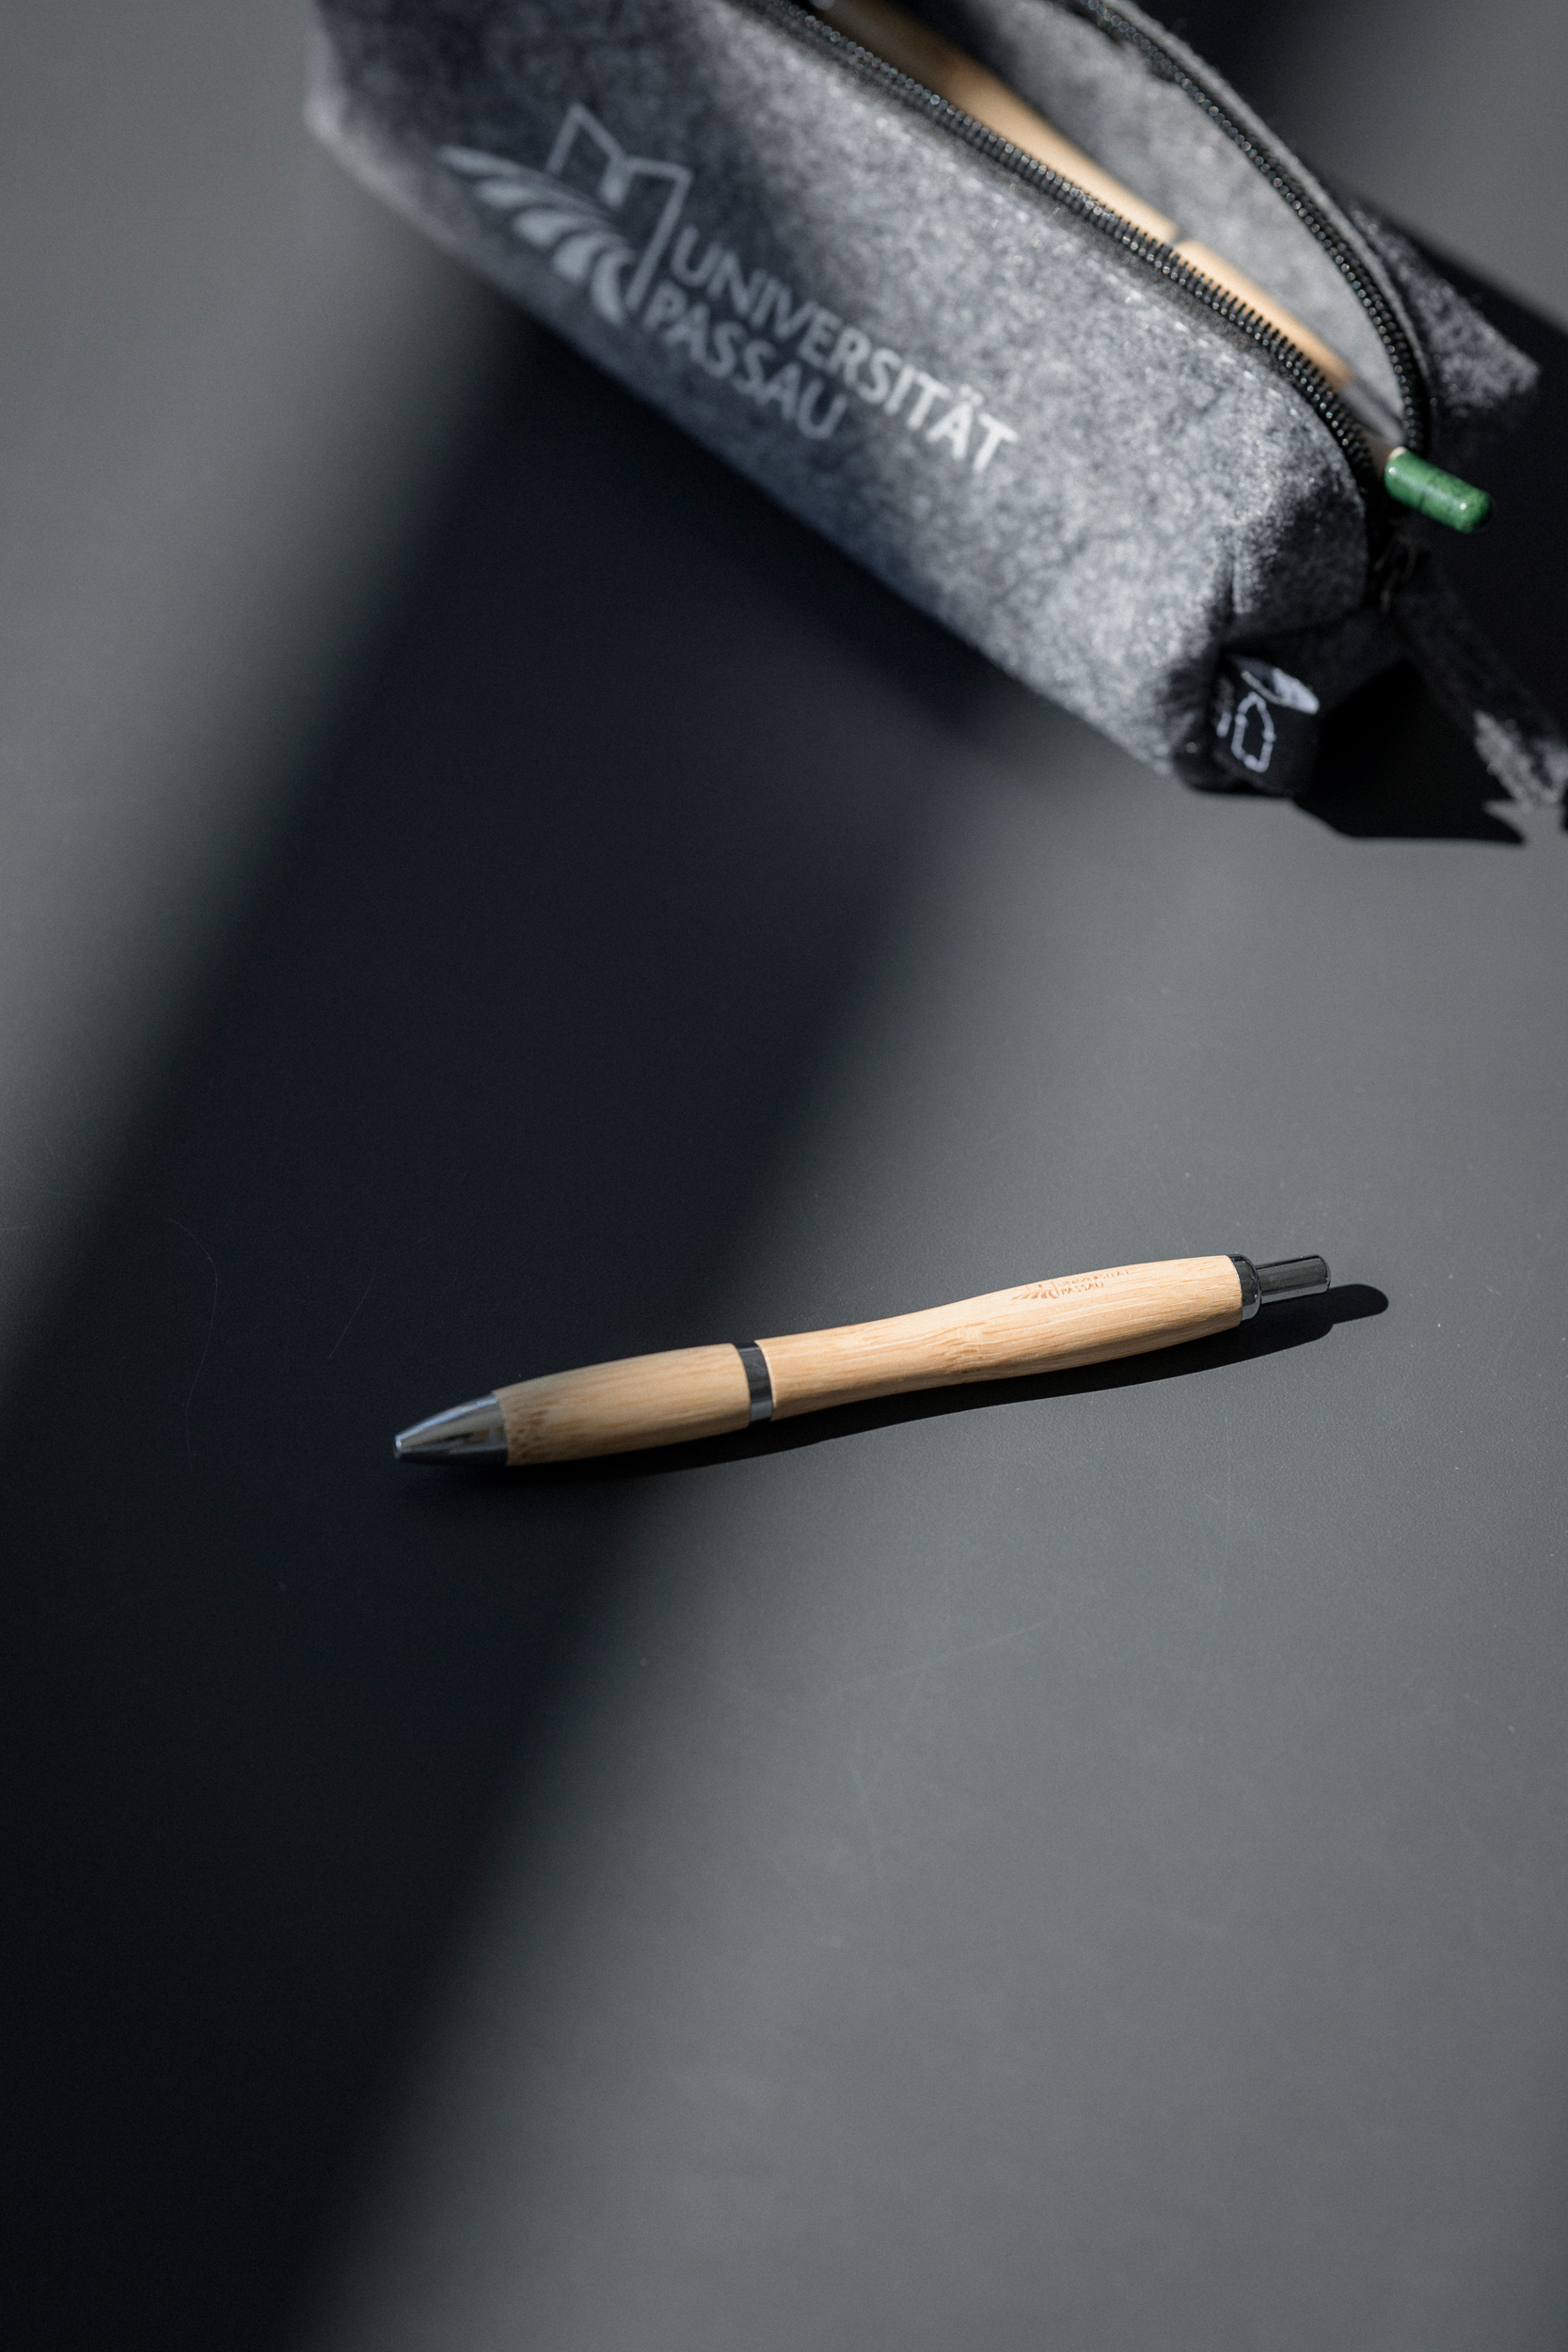 Bambus-Kugelschreiber